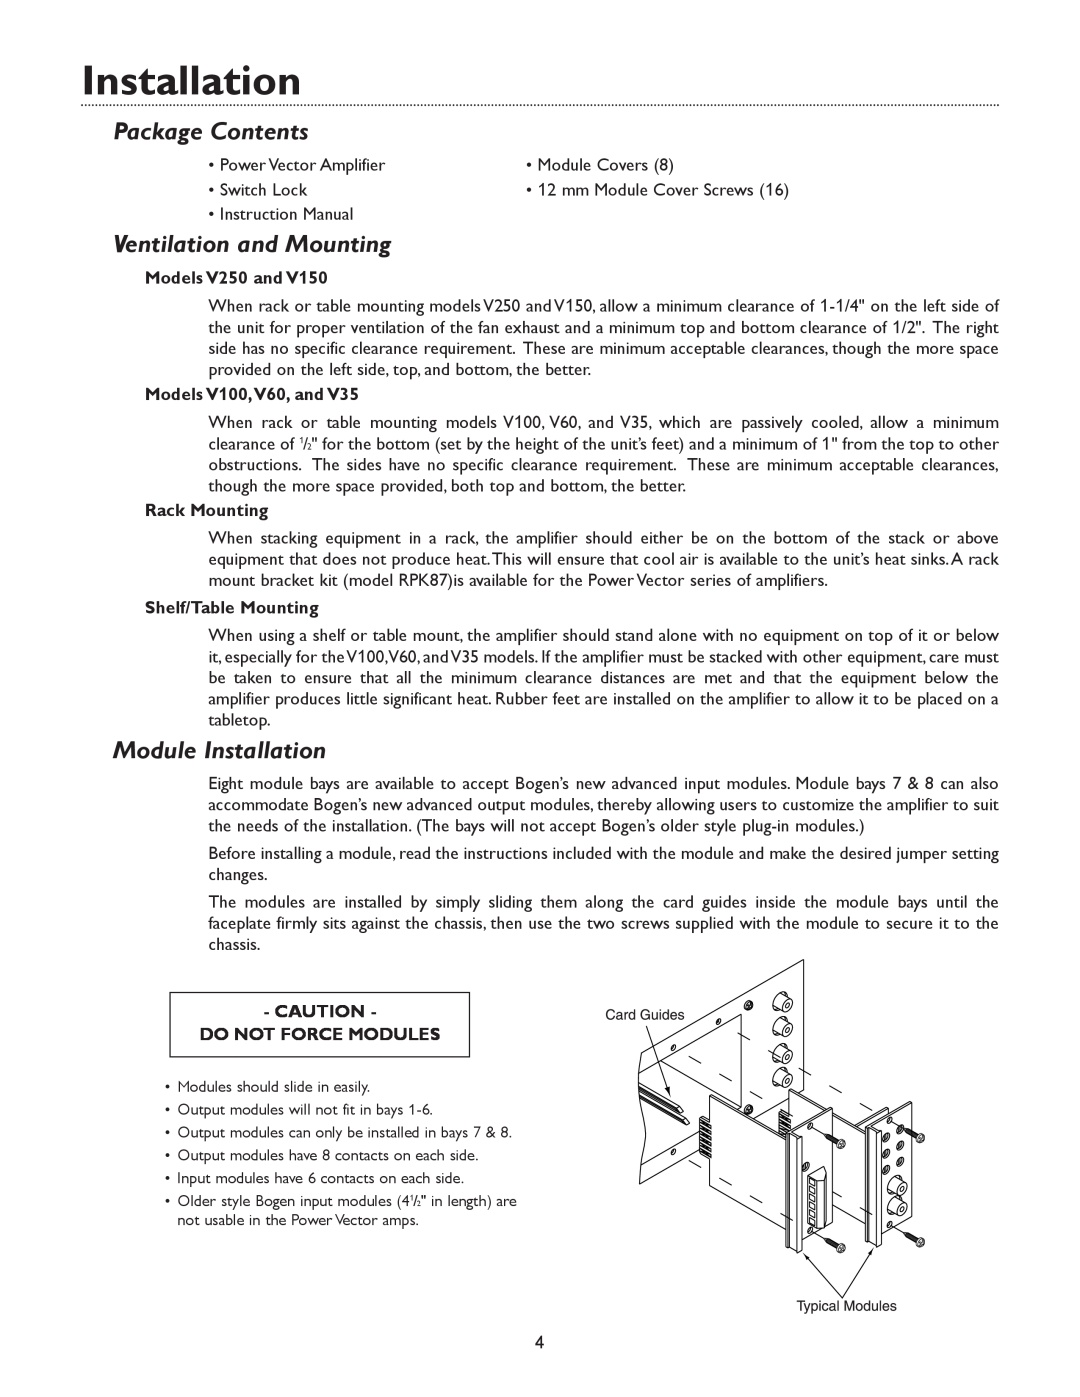 Bogen V150 Package Contents, Ventilation and Mounting, Module Installation, Models V250 and, Models V100,V60, and 